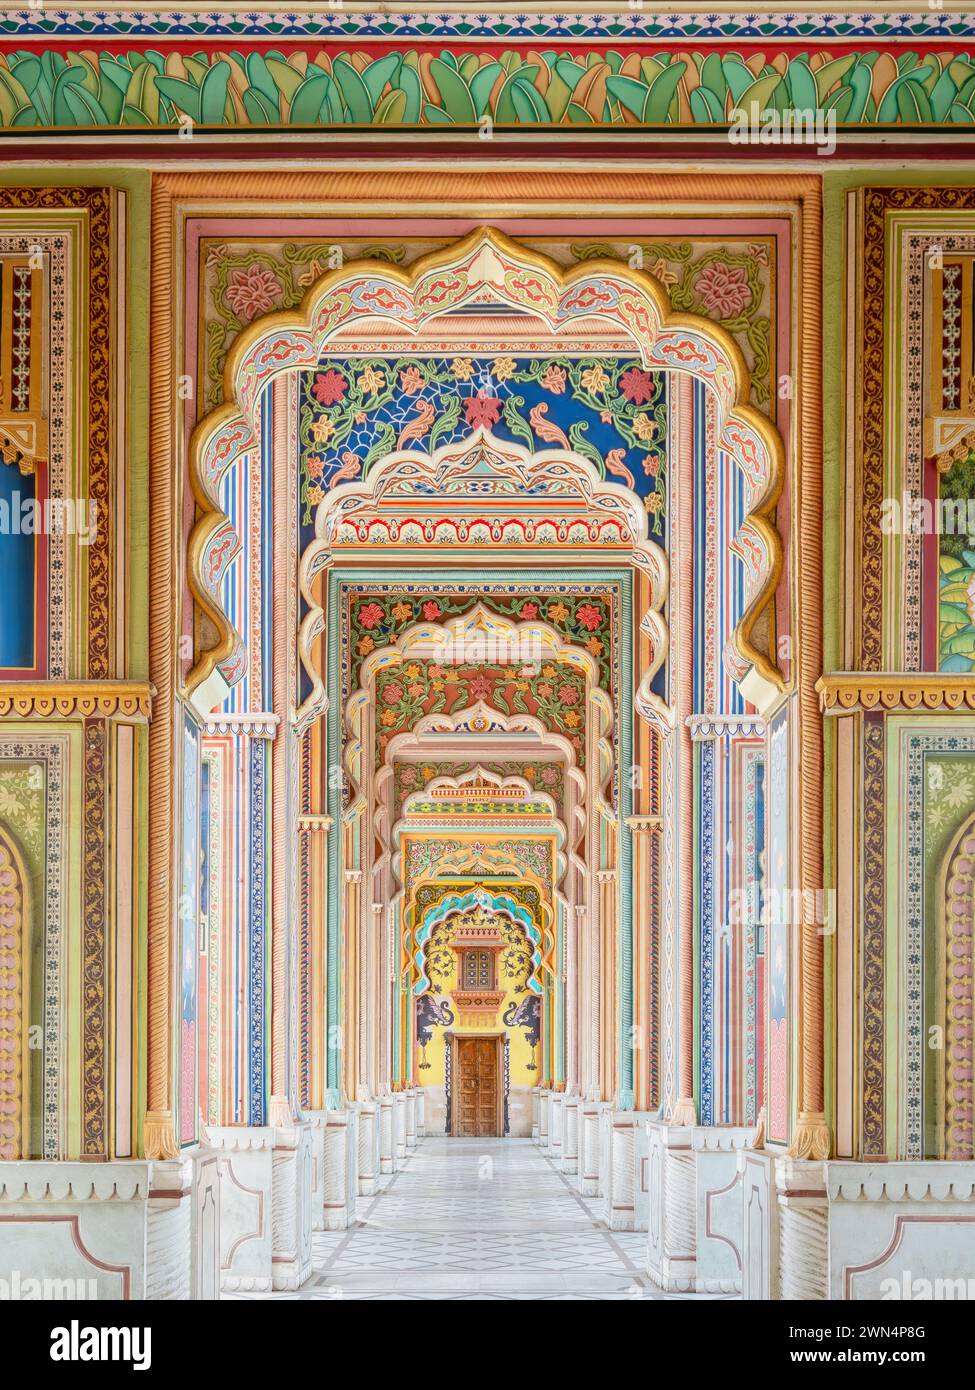 Patrika Gate am Jawahar Circle in Jaipur, Rajasthan, Indien. Stockfoto